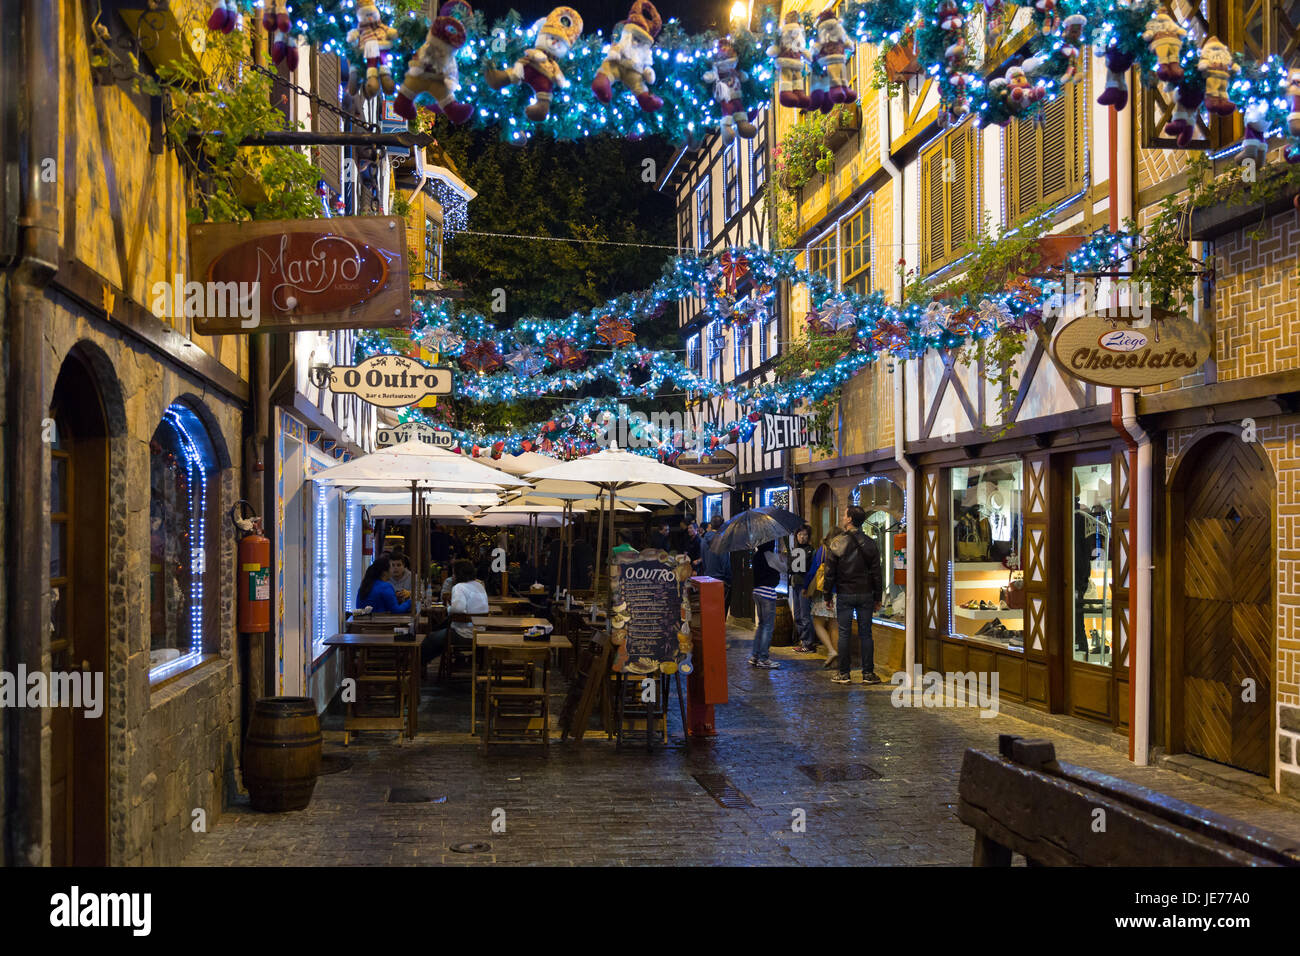 Fußgängerzone, europäische Architektur im Schweizer und deutschen Stil, farbenfrohe Weihnachtsdekorationen am Boulevard Geneve, Capivari, Campos do Jordao Stockfoto